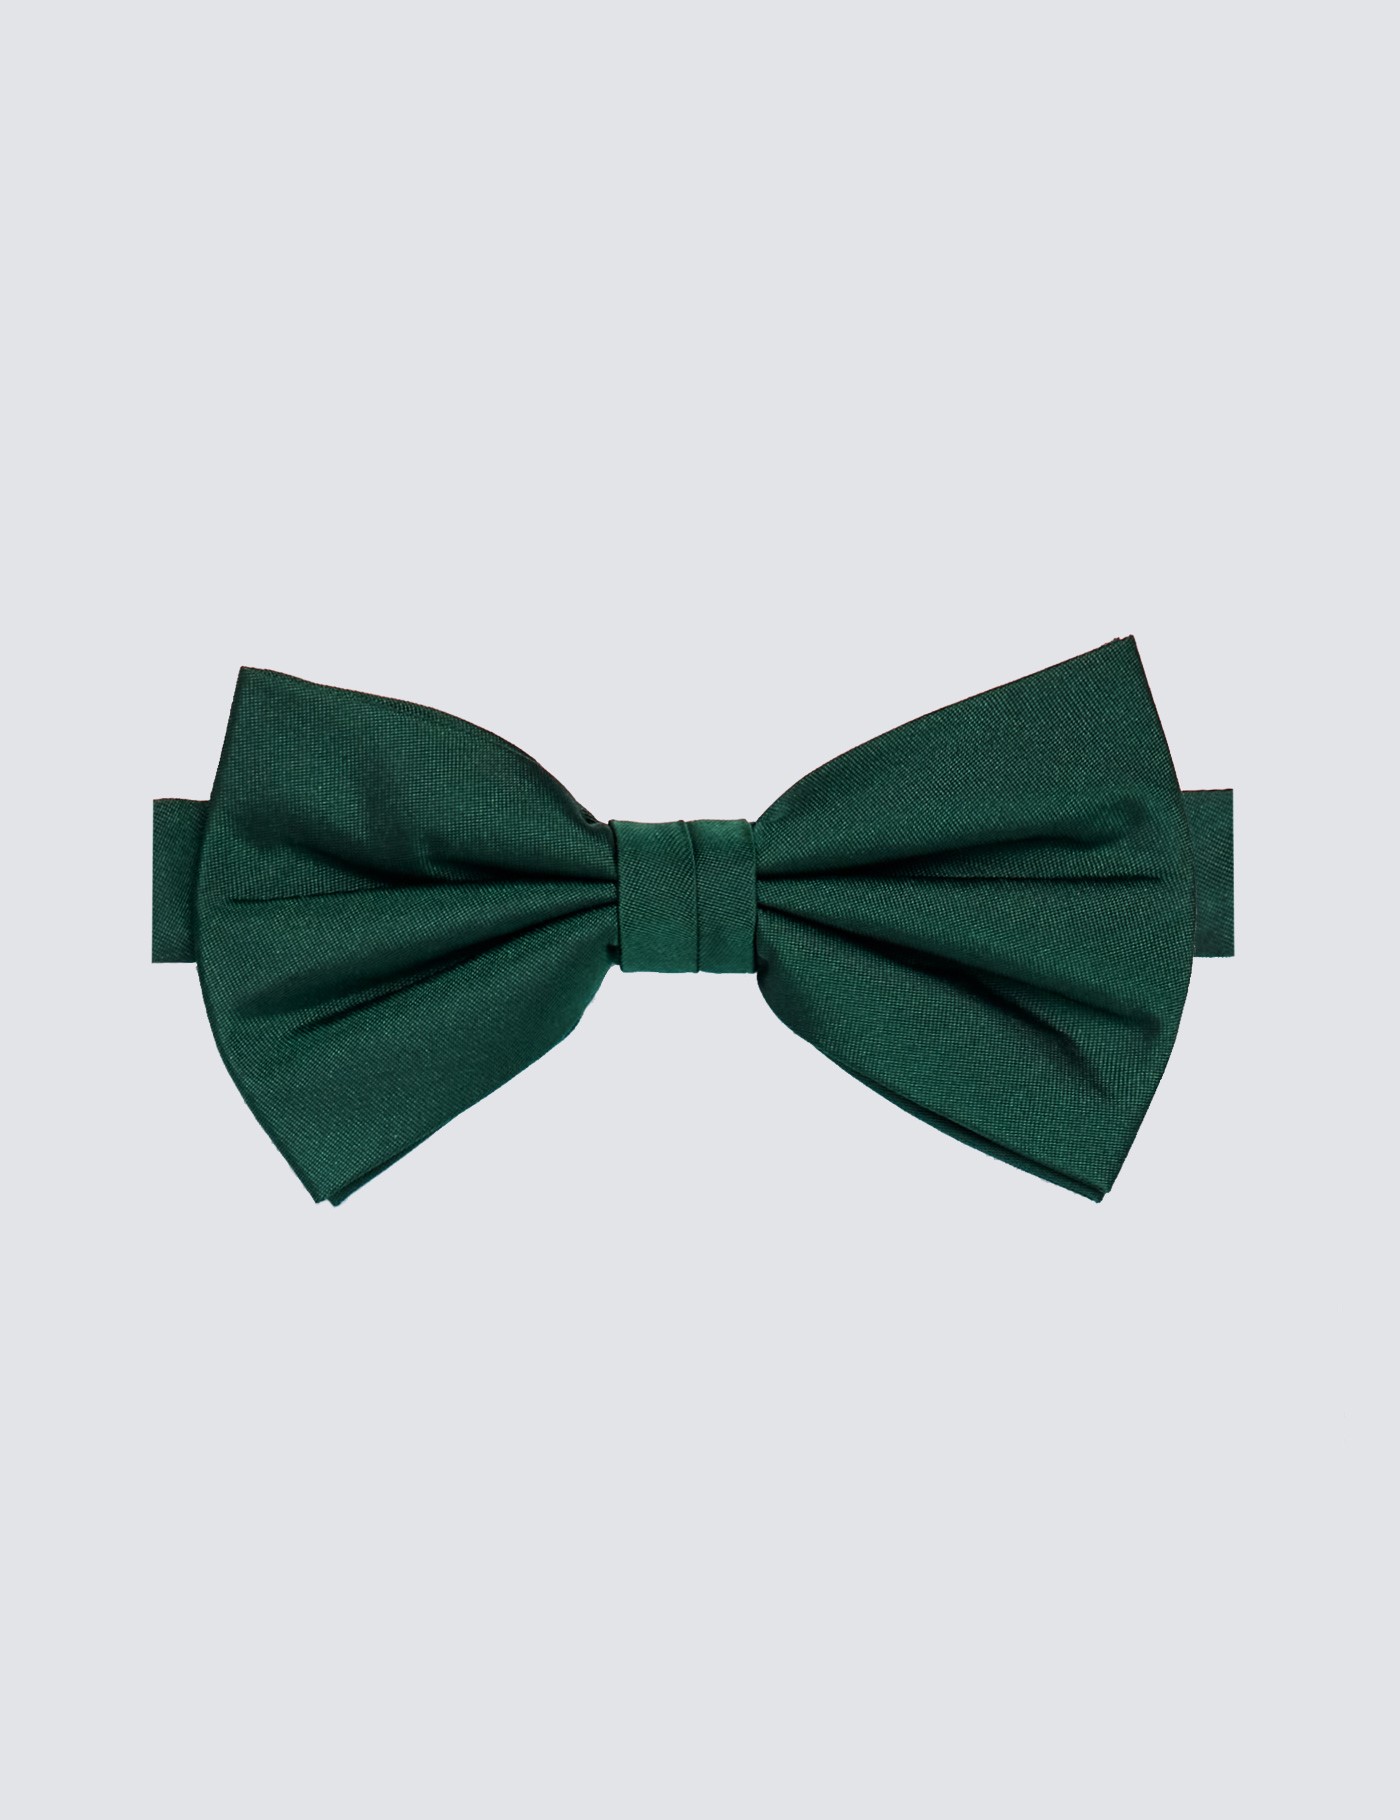 hawes & curtis men's green plain silk bow tie - 100% silk